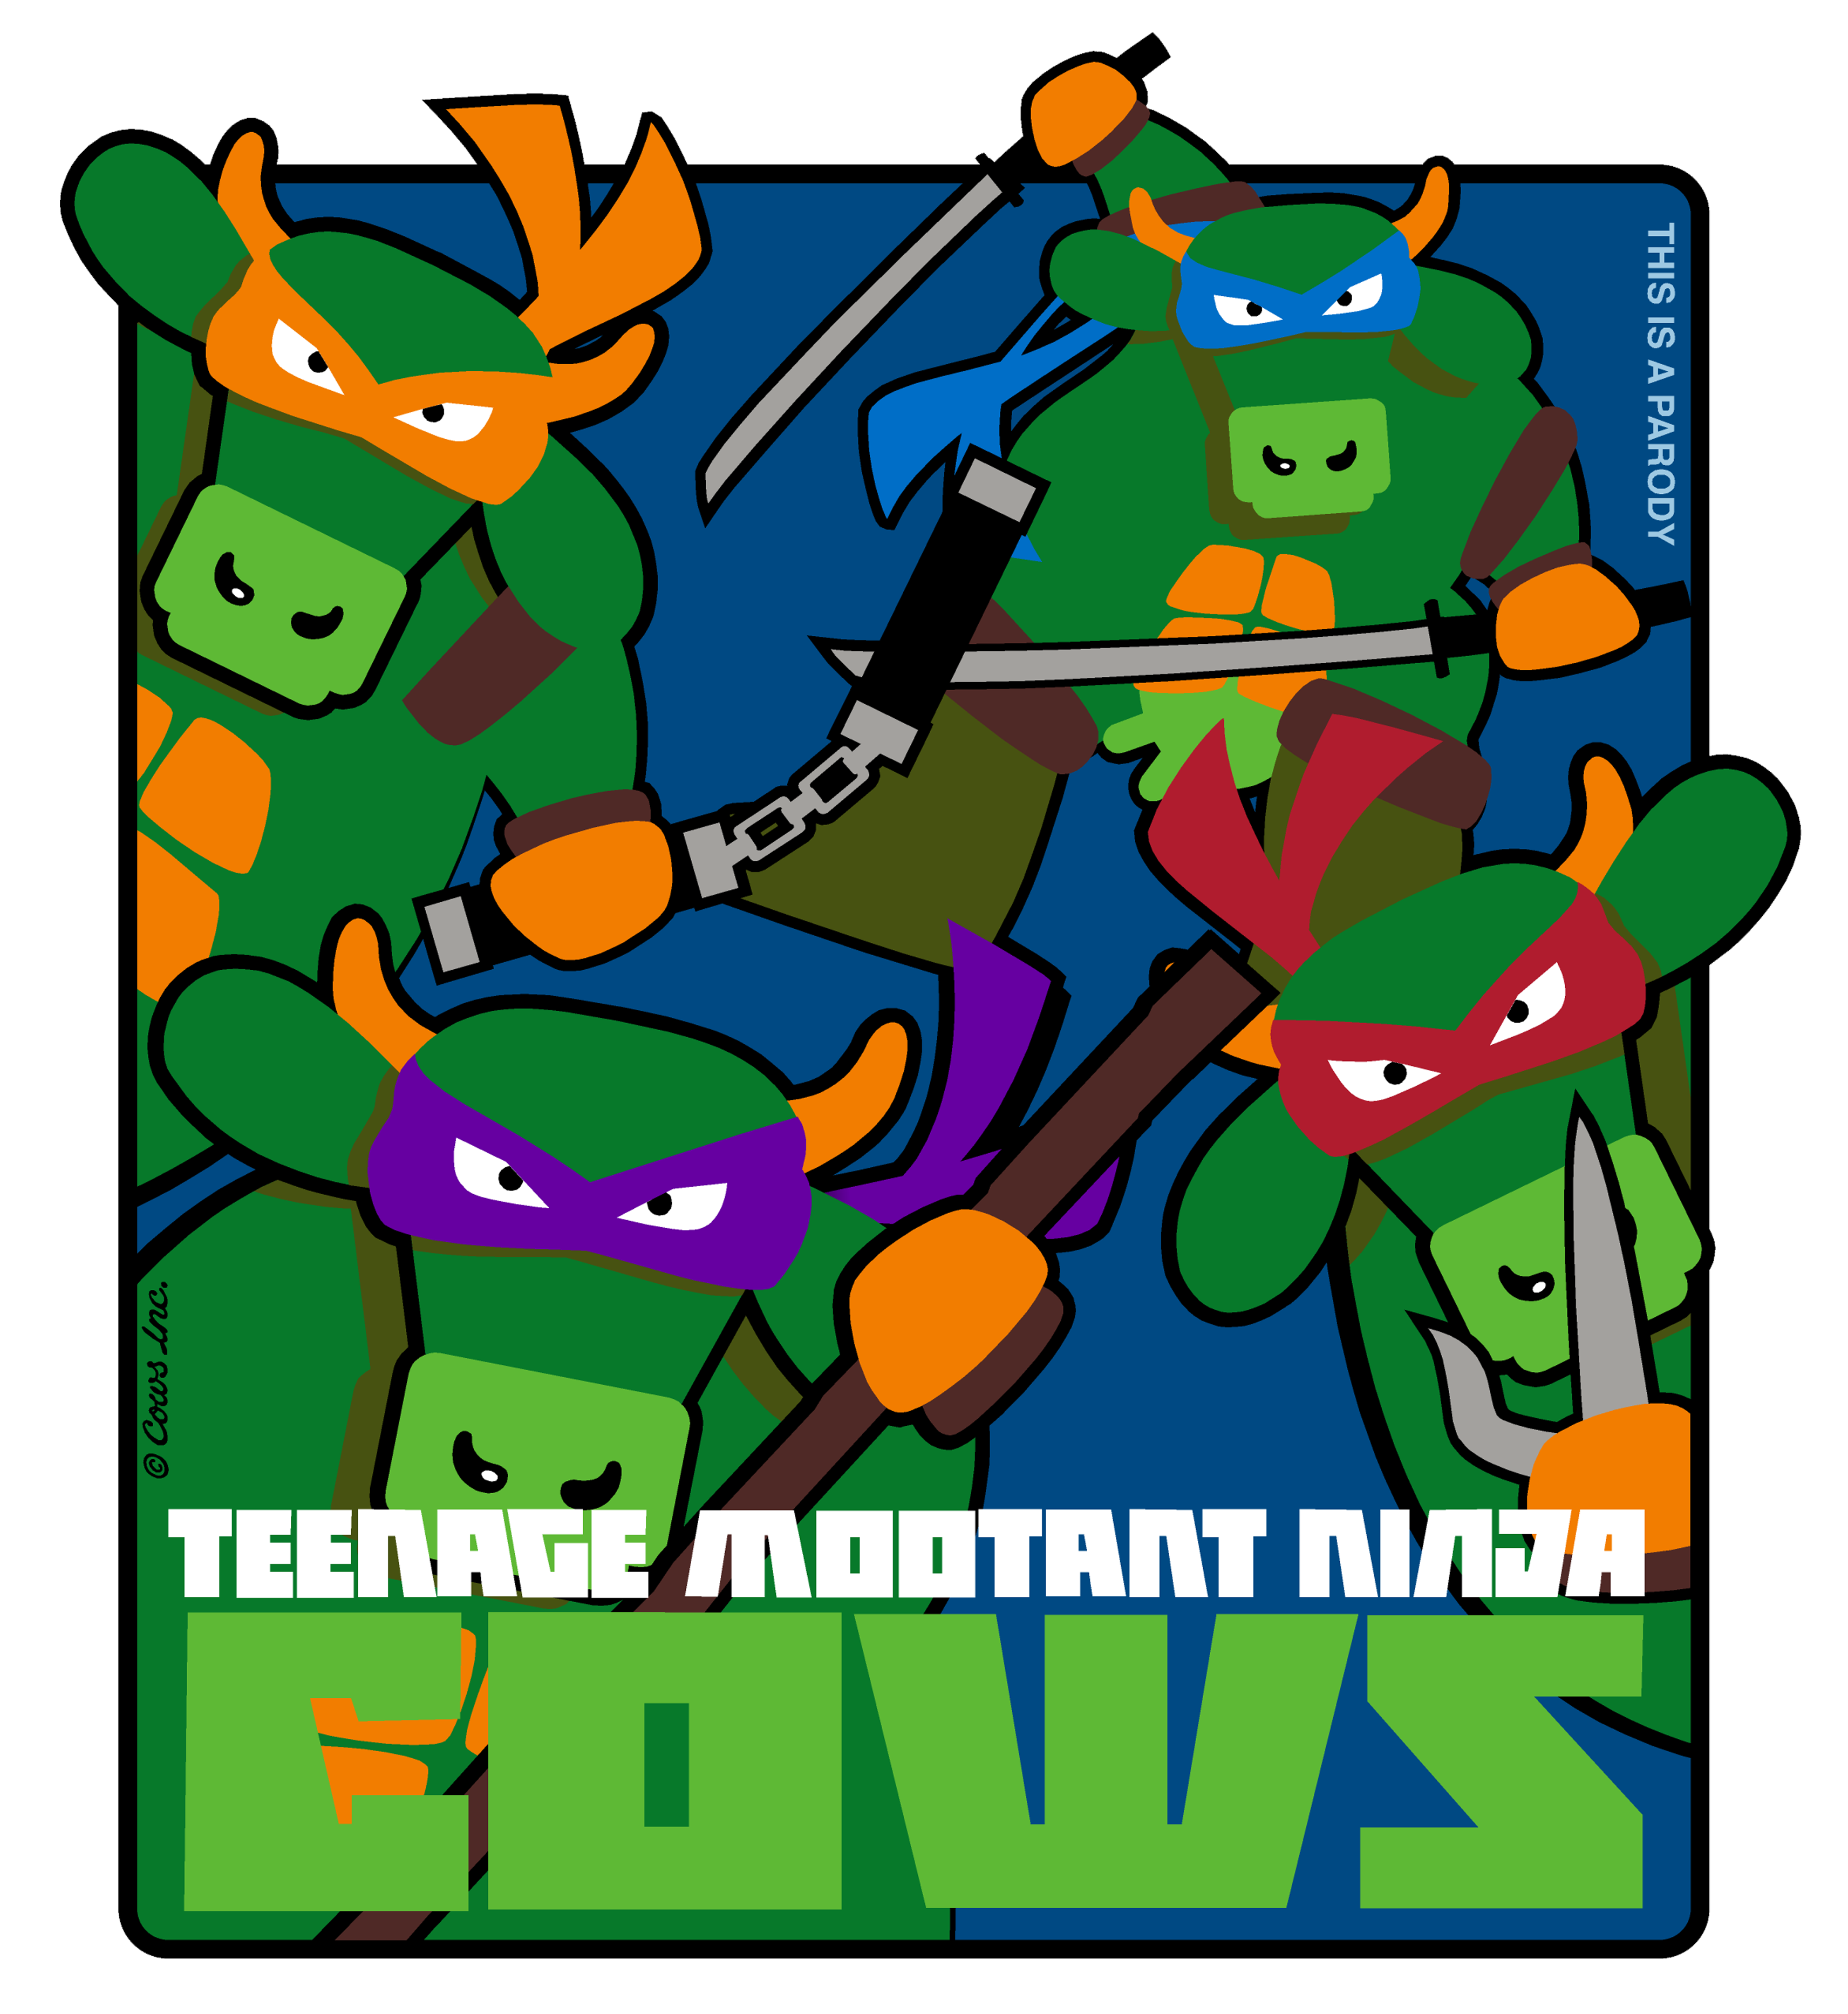 Teenage MOOtant Ninja COWS Adult/Youth/Kids T